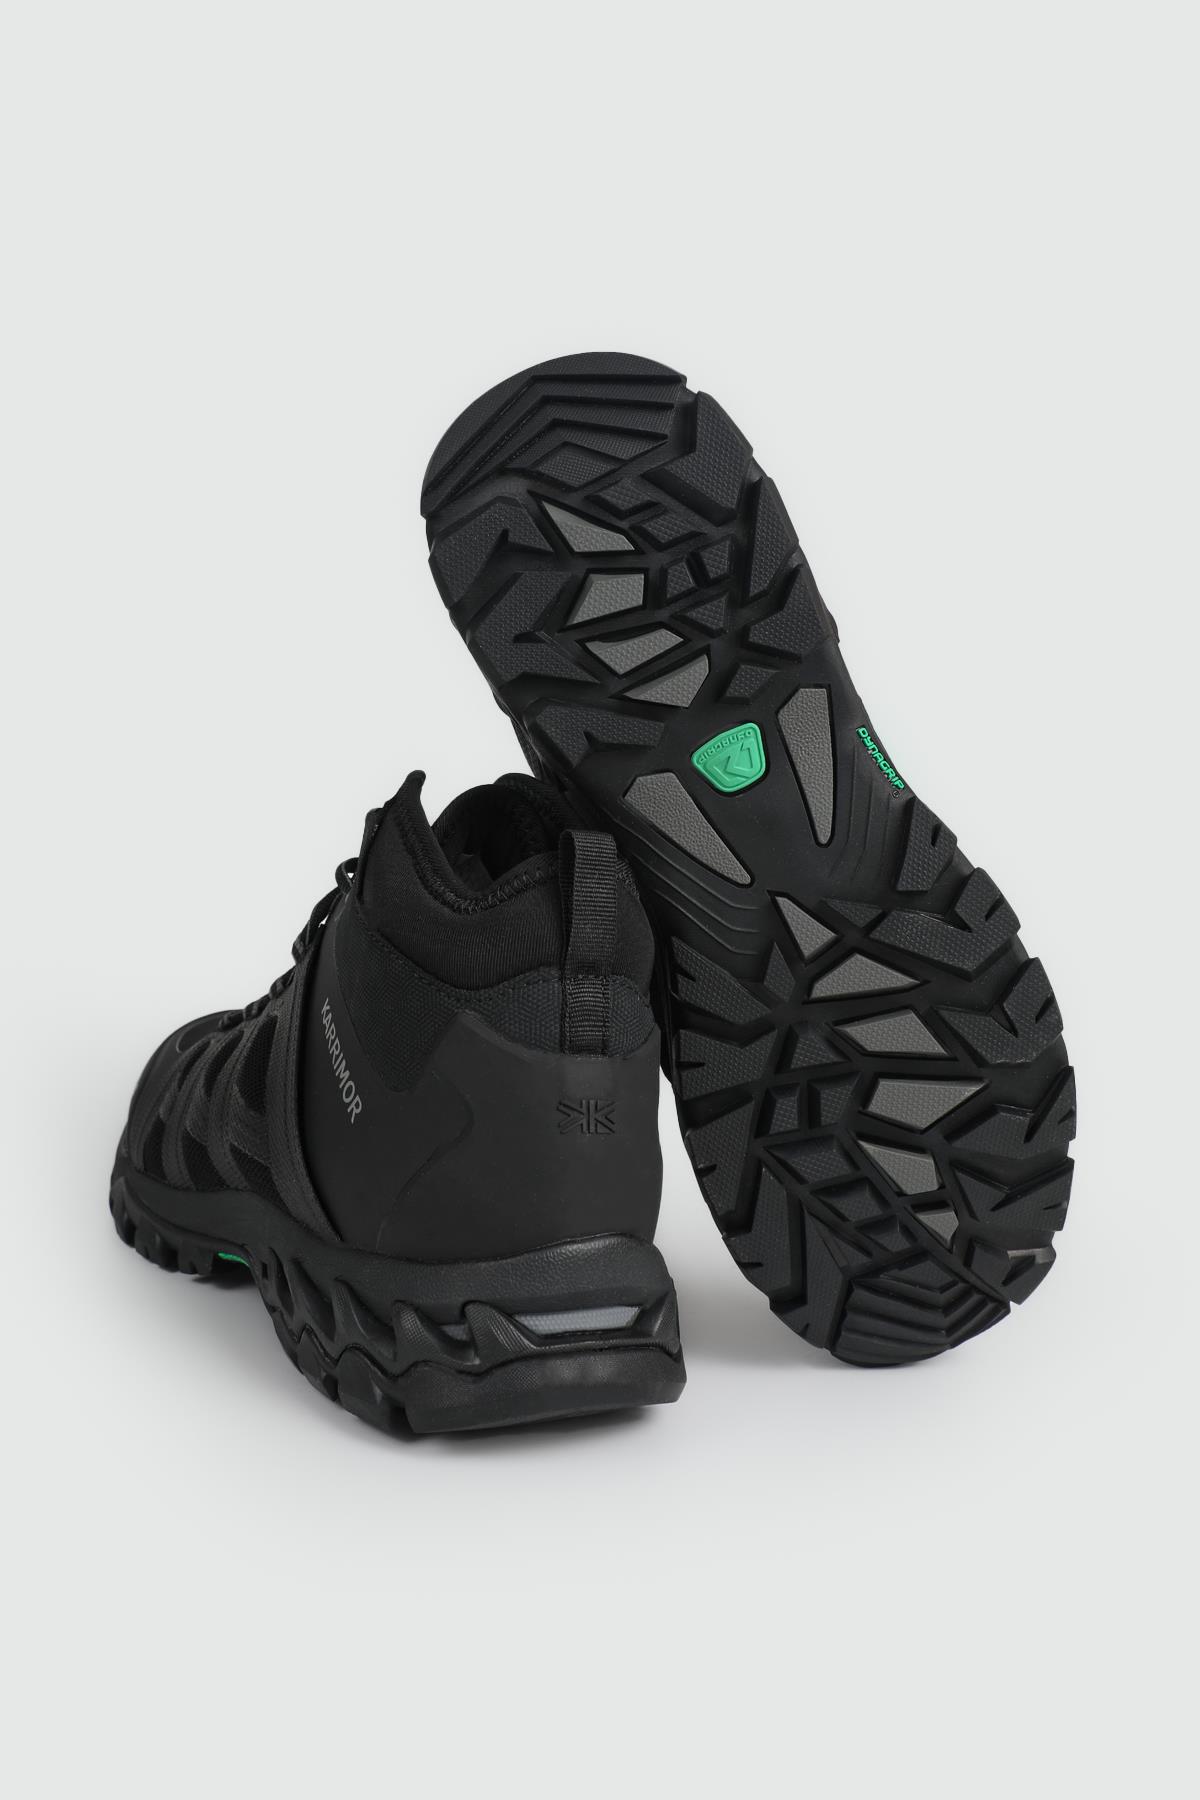 Outdoor Su Geçirmez BLACK Erkek Spor Ayakkabı K1080-BLK